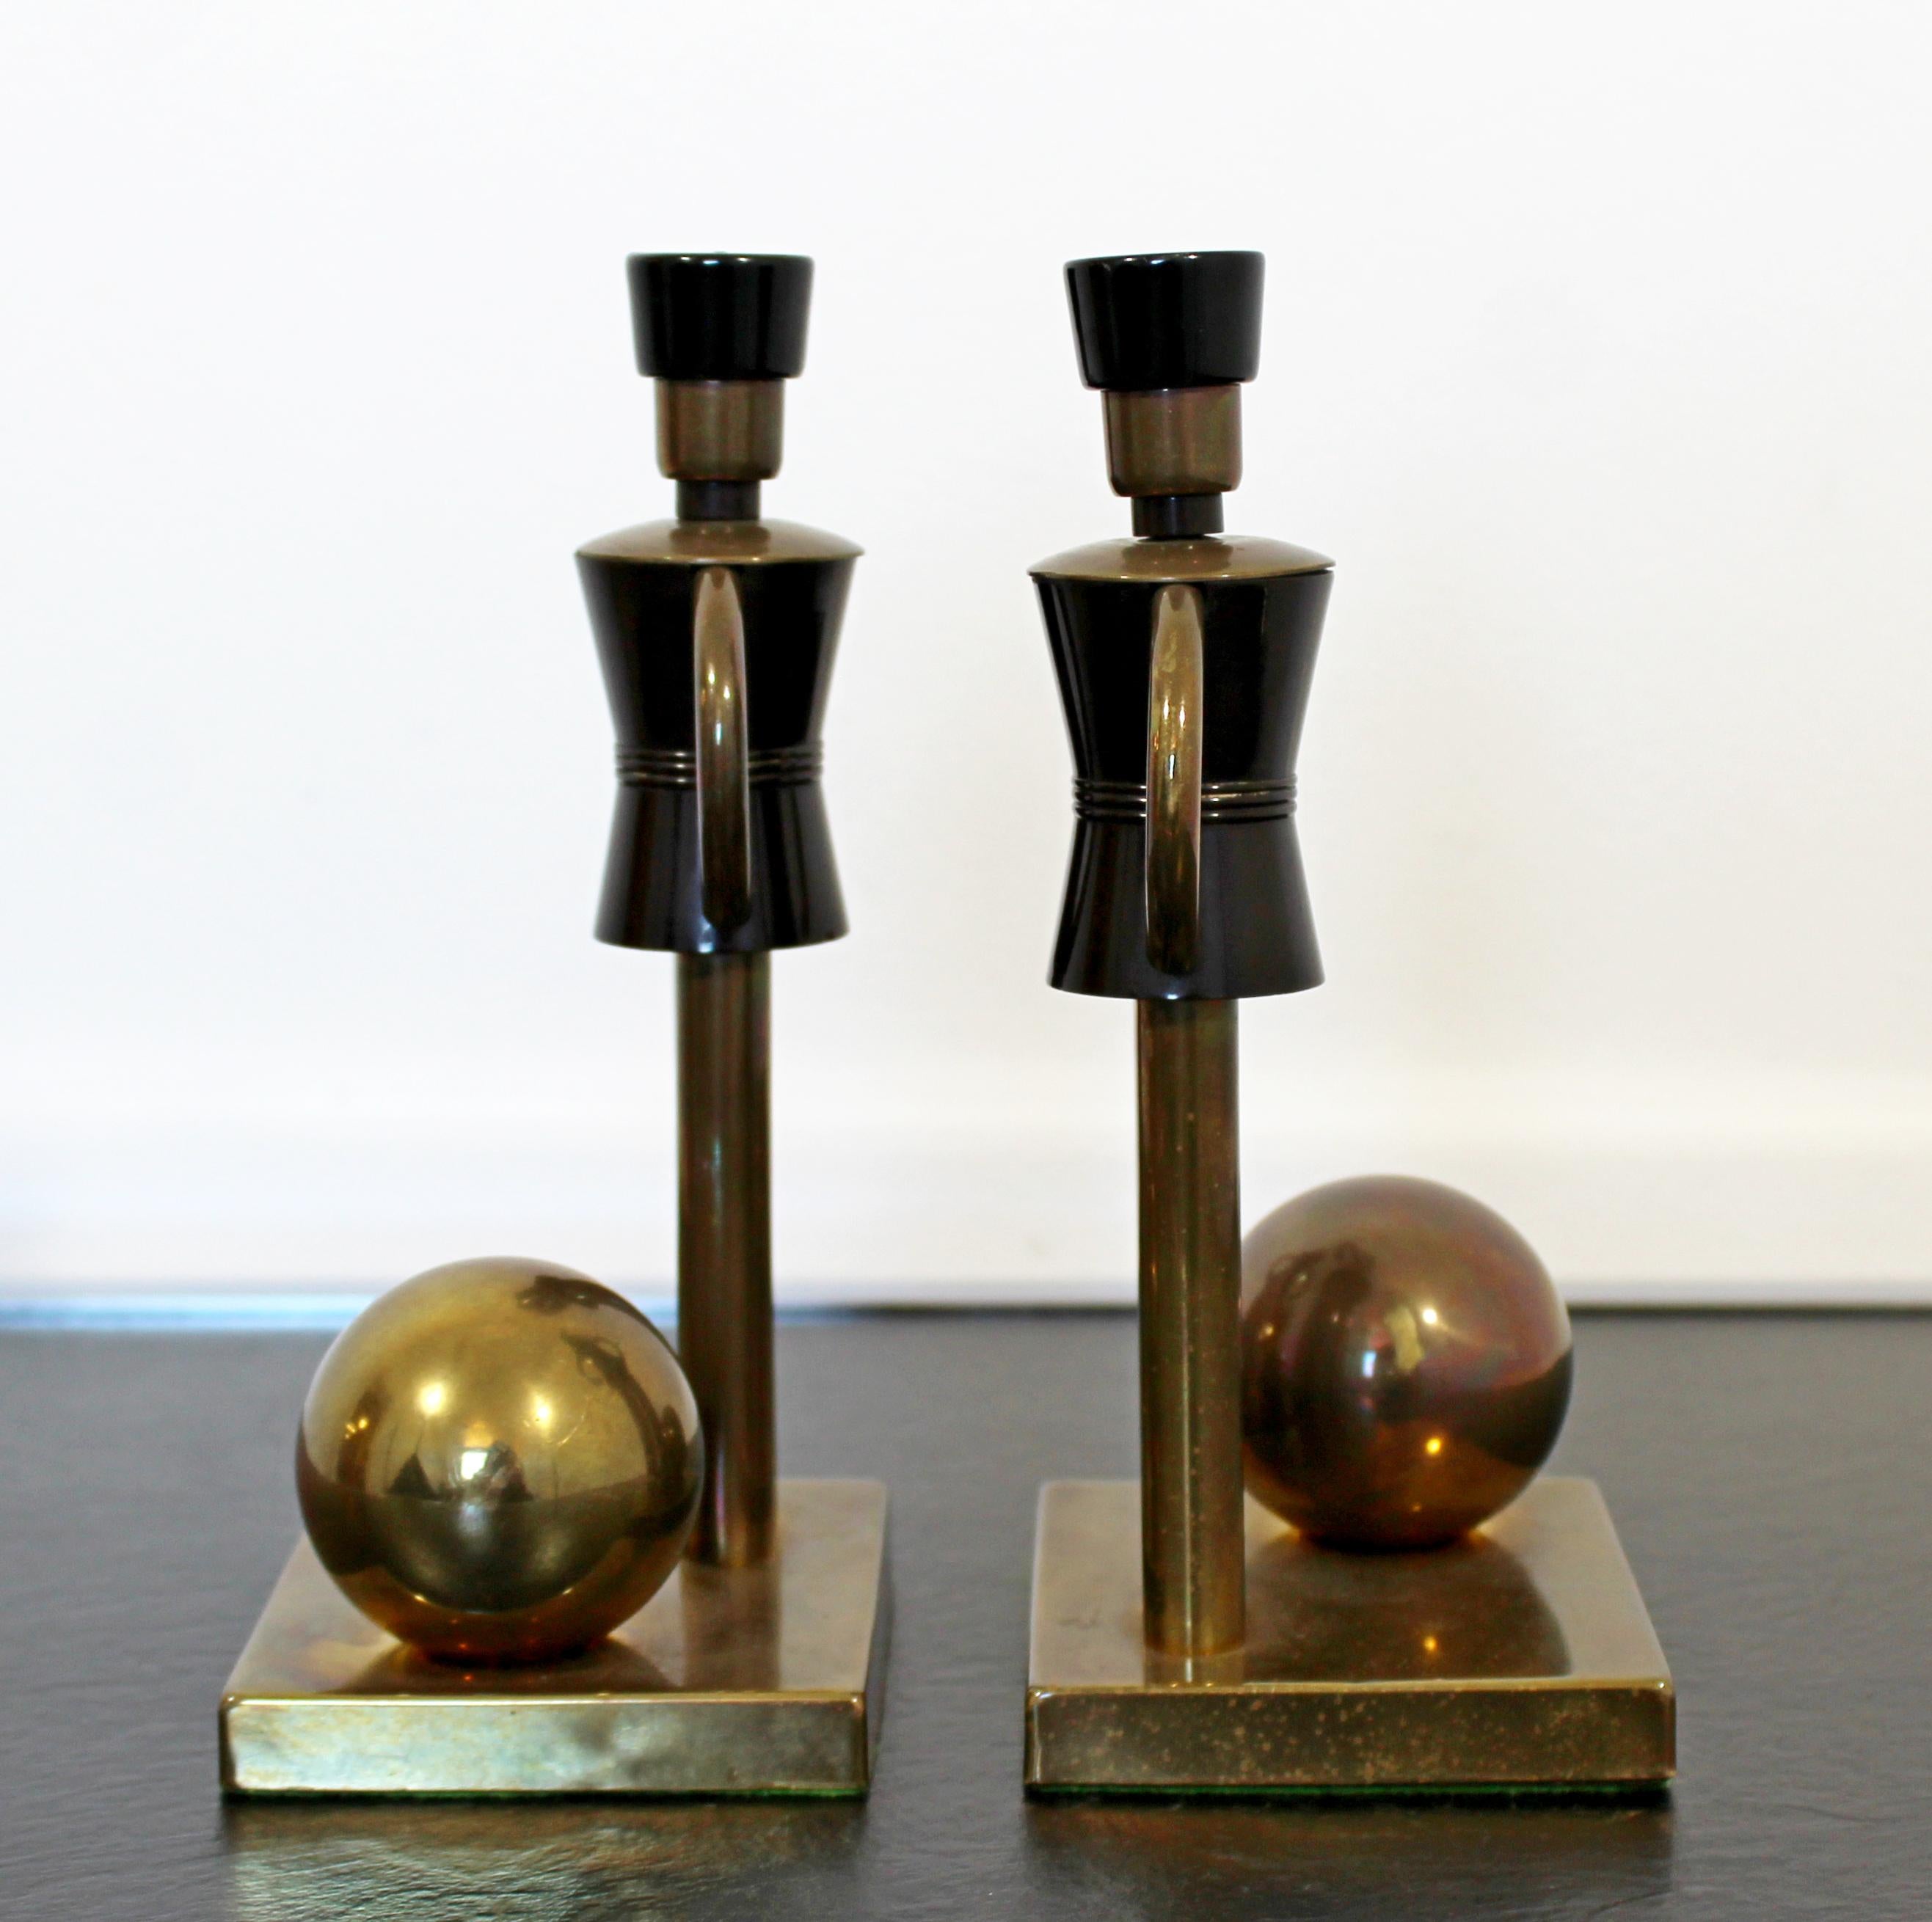 20th Century Art Deco Walter Von Nessen Chase Brass Bakelite Bookends Table Sculptures Toy